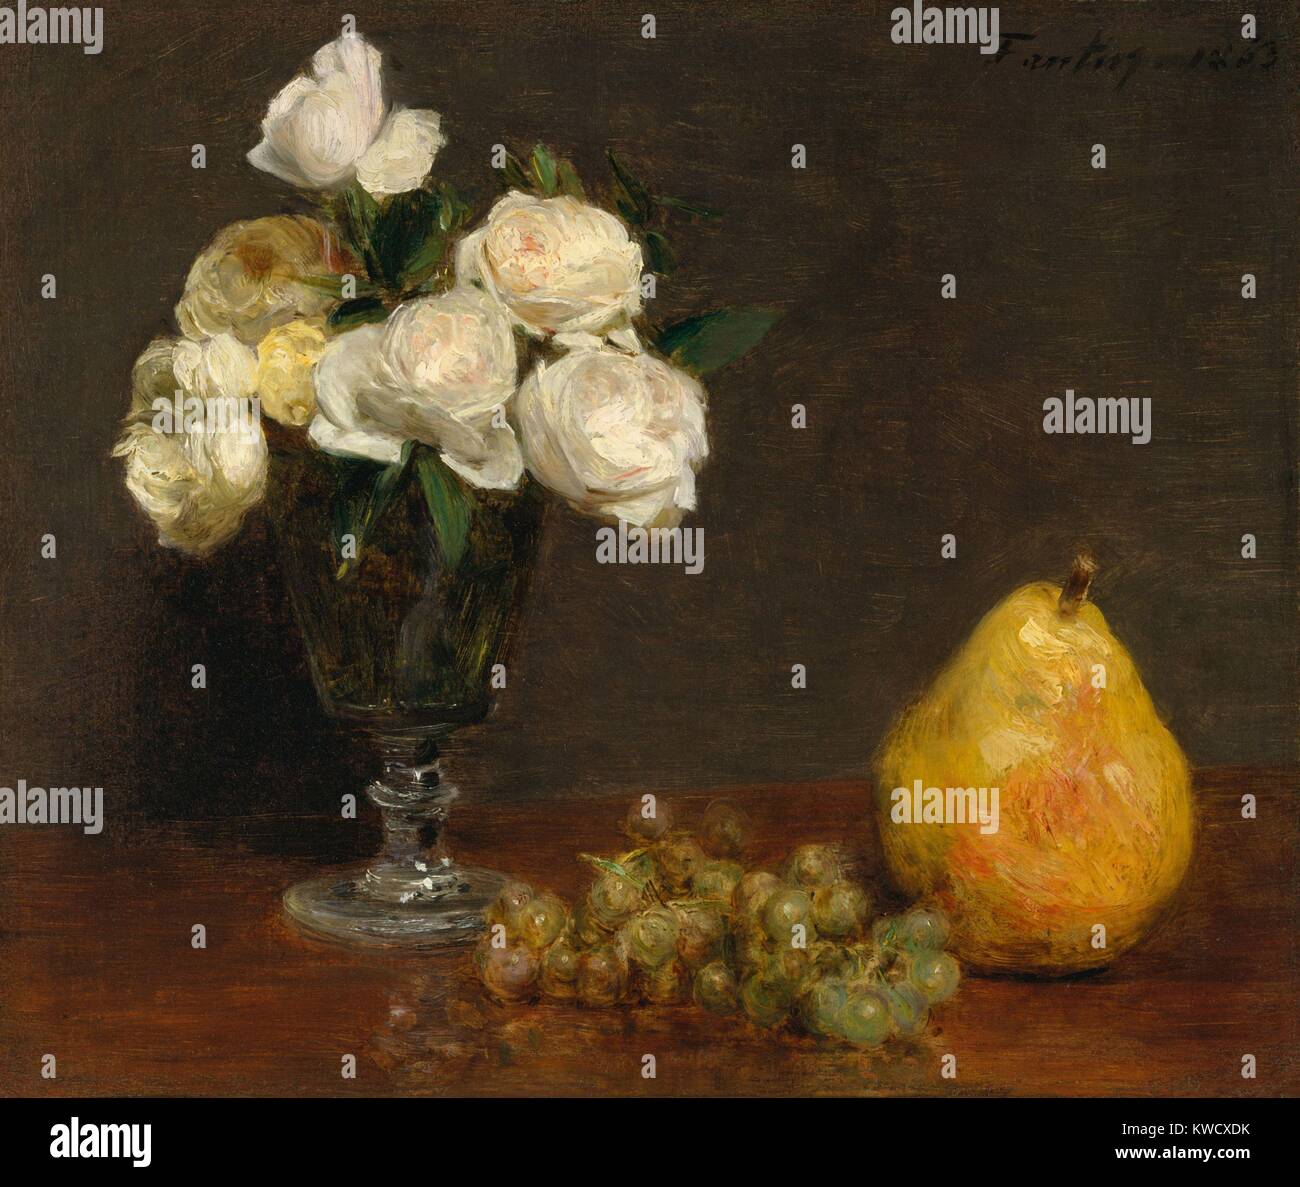 Stillleben mit Rosen und Obst, von Henri Fantin-Latour, 1863, französischer Impressionisten Öl Malerei. Fantin-Latour mit den Impressionisten verbunden, aber sein Stil blieb kompositorisch Konservative während seiner gesamten künstlerischen Karriere (BSLOC 2017 3 147) Stockfoto